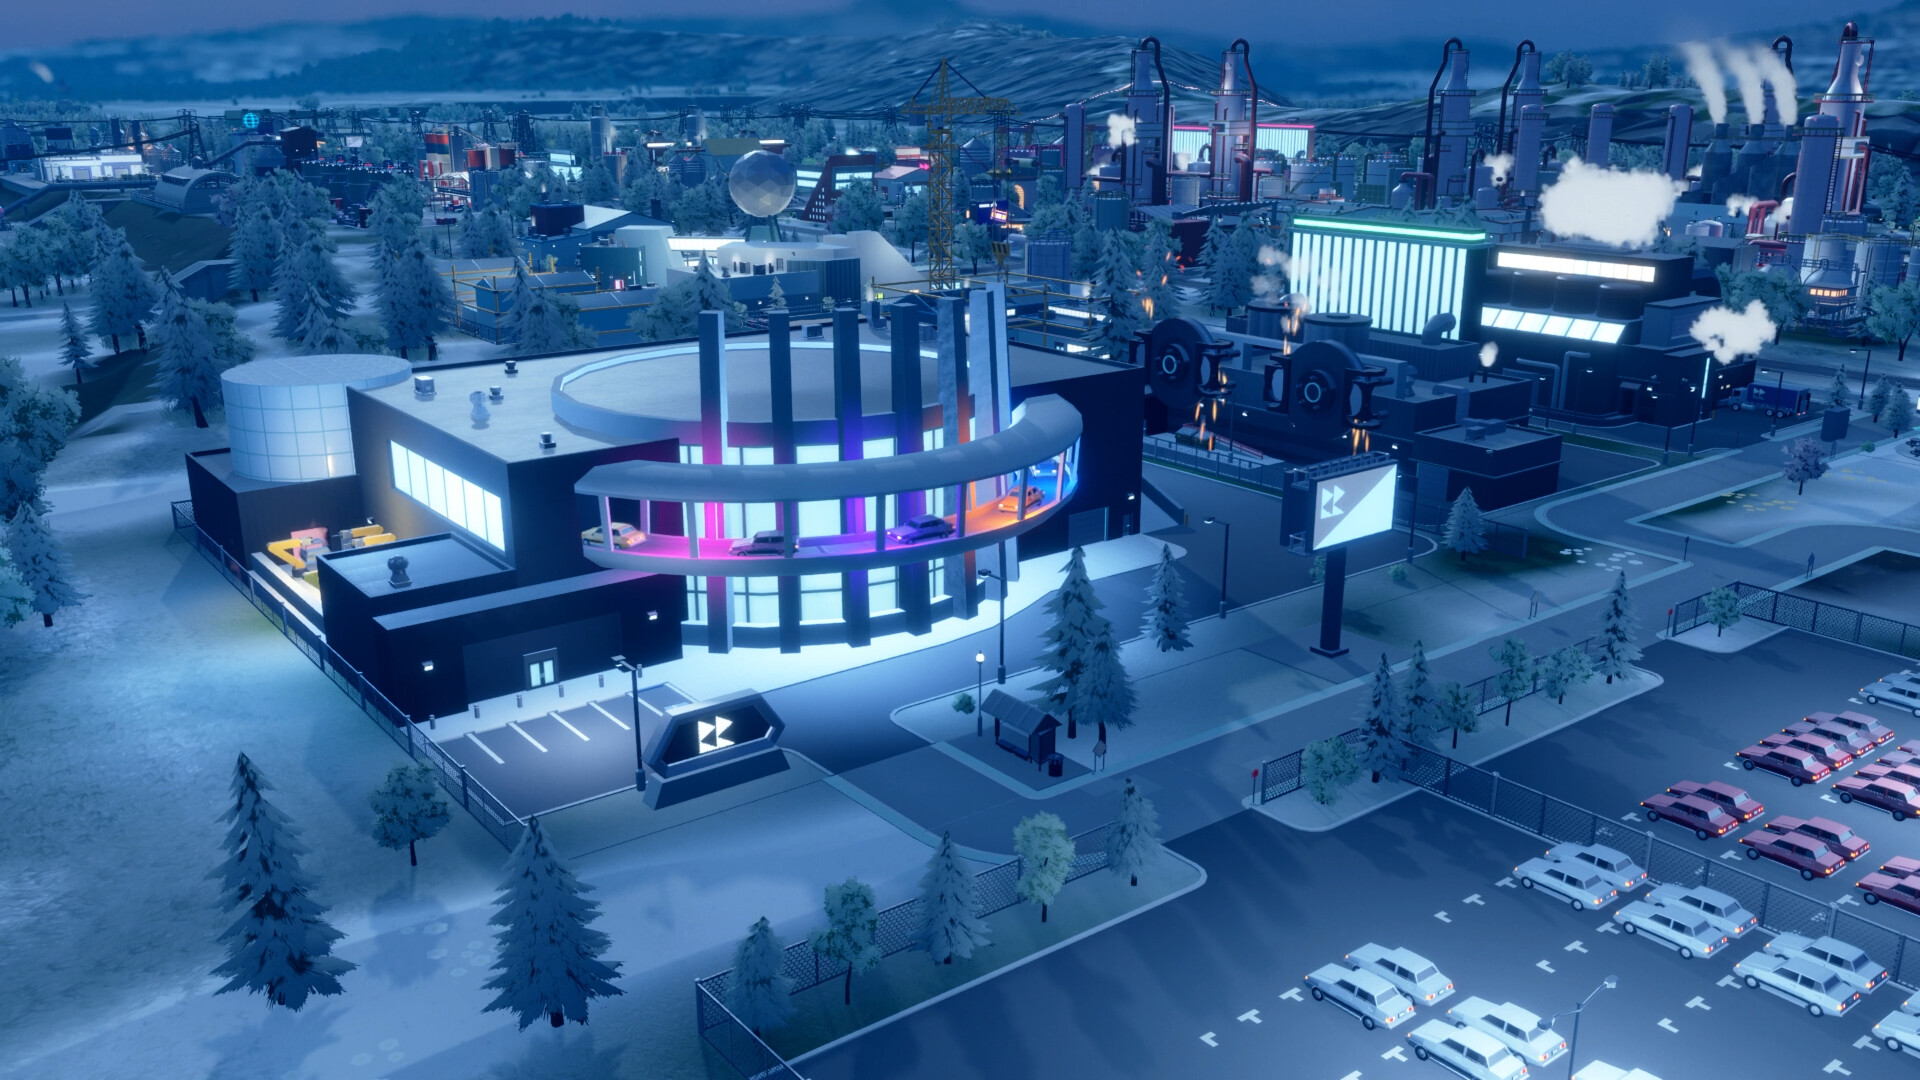 Rse of Industry 2 Juego de estrategia Steam: Una pequeña ciudad del juego de estrategia Steam Rise of Industry 2